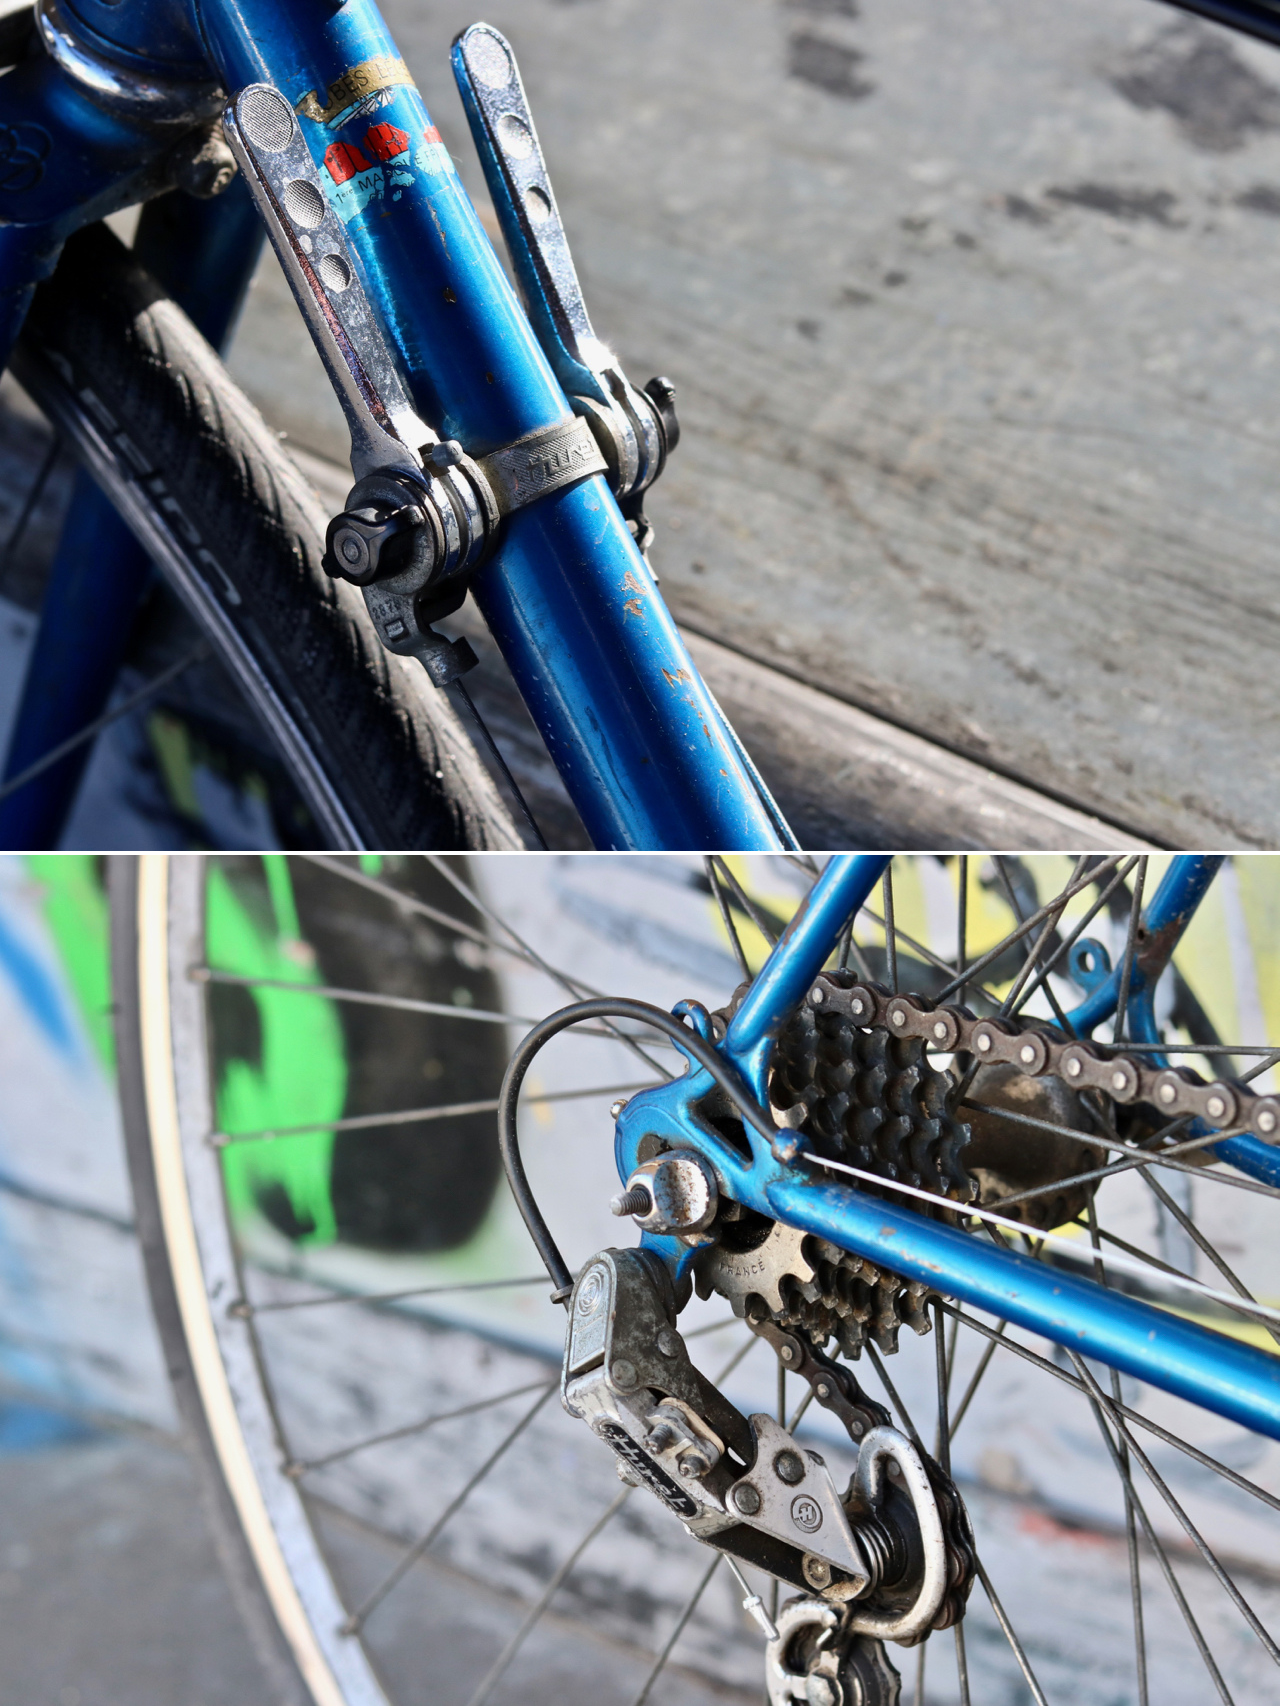 changer gaine grise frein vélo vintage et cable dérailleur ancien